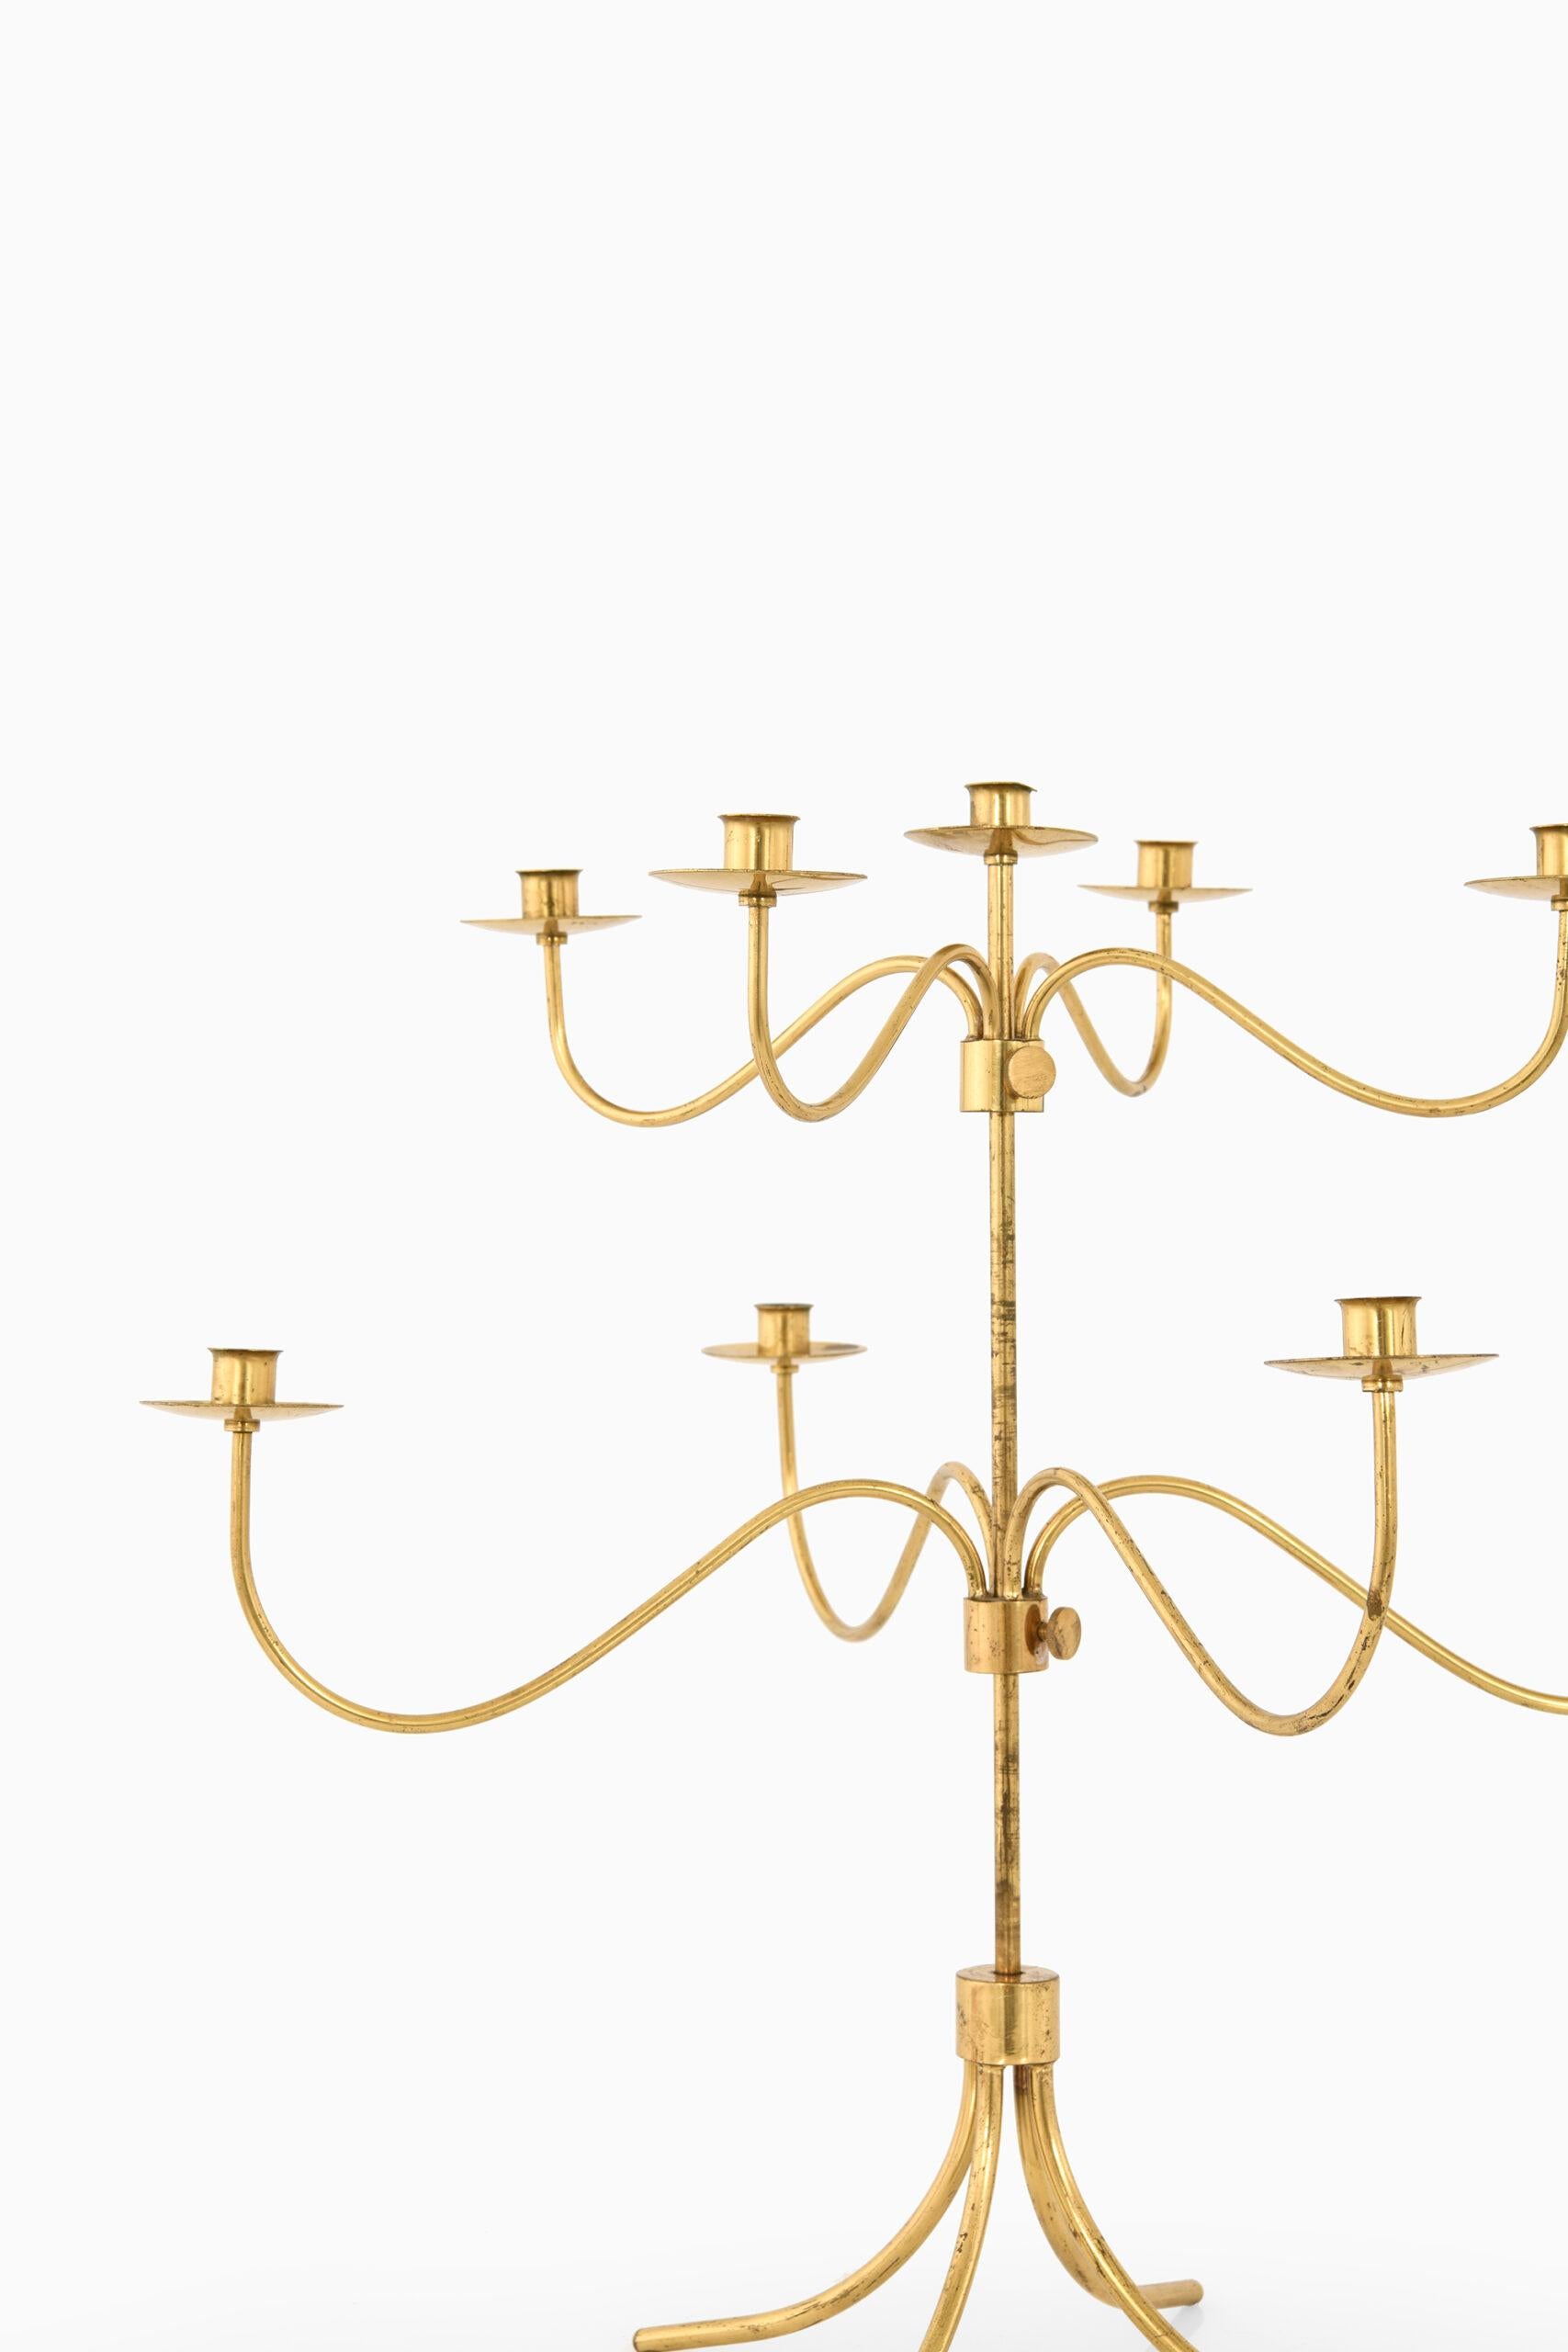 Rare chandelier conçu par Josef Frank. Produit par Svenskt Tenn en Suède.
 